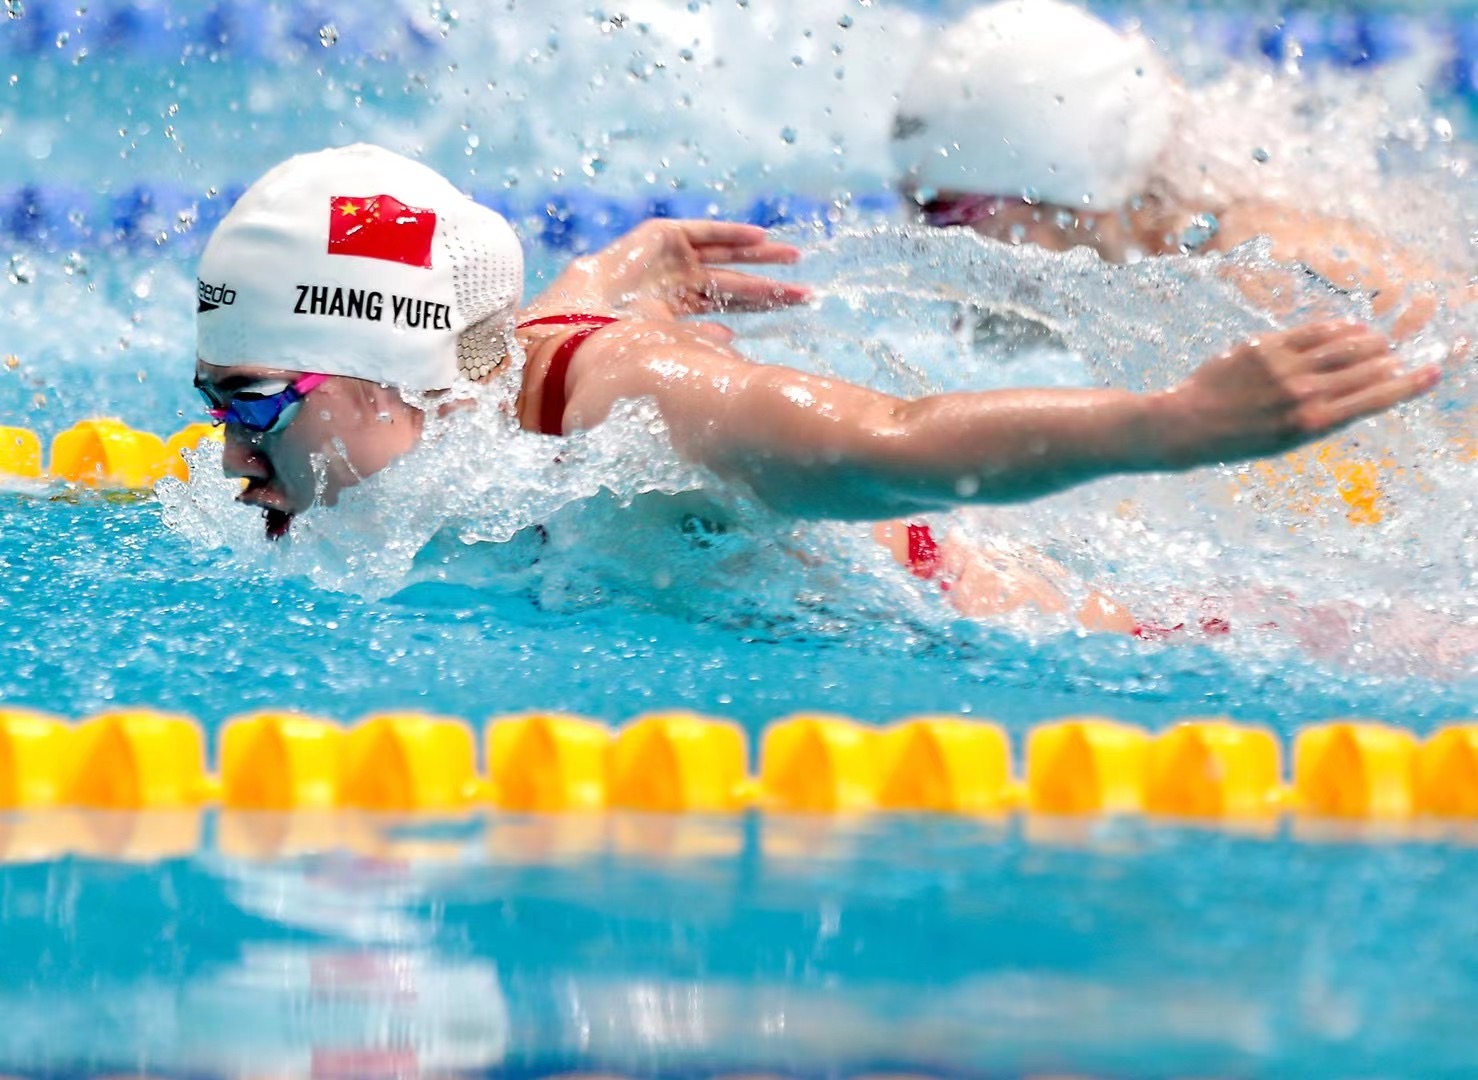 十四运会游泳项目开赛江苏运动员张雨霏晋级100米蝶泳决赛